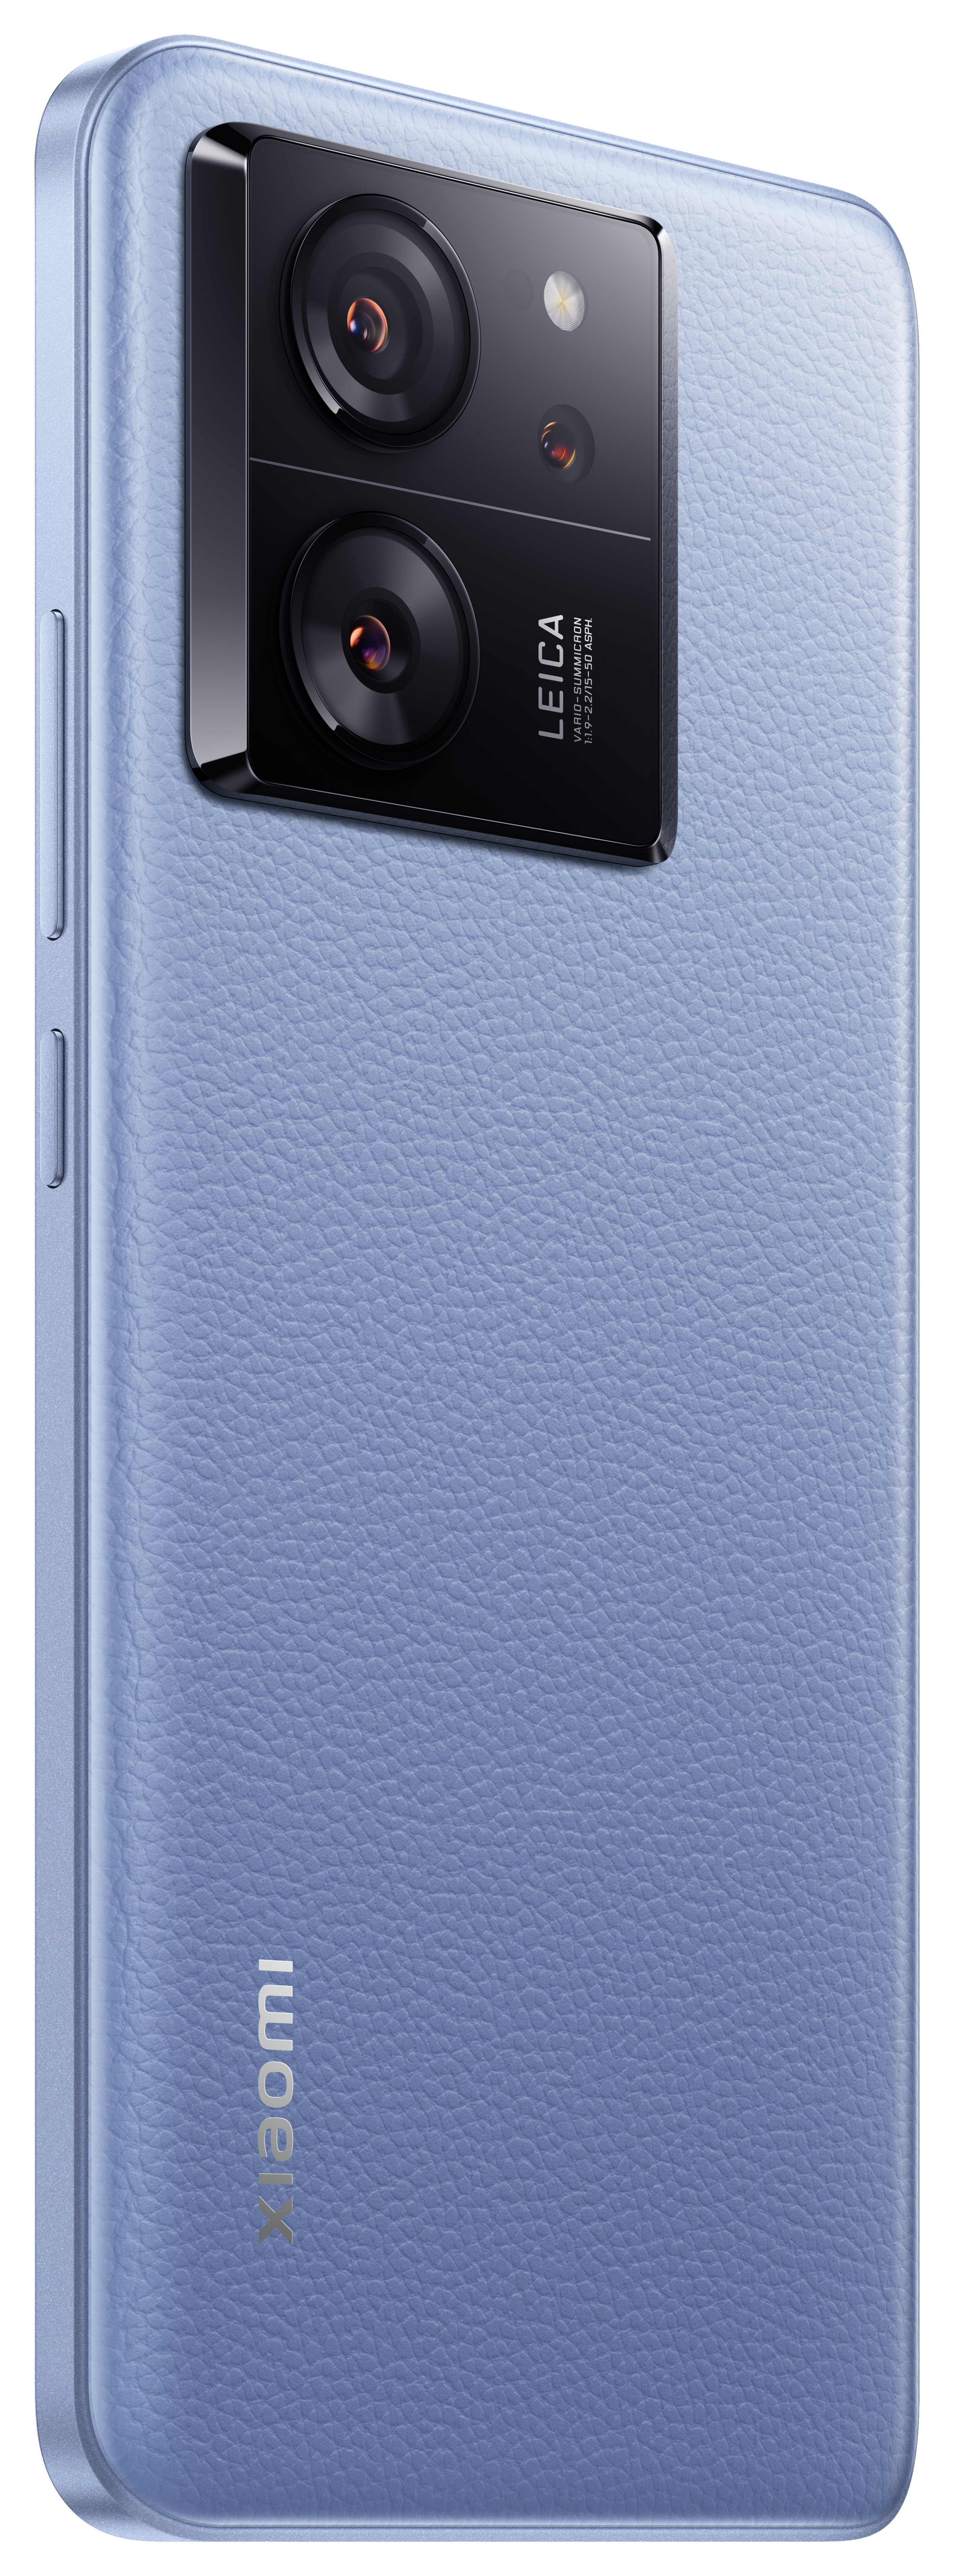 XIAOMI SIM Pro Alpine Blue GB 512 13T Dual